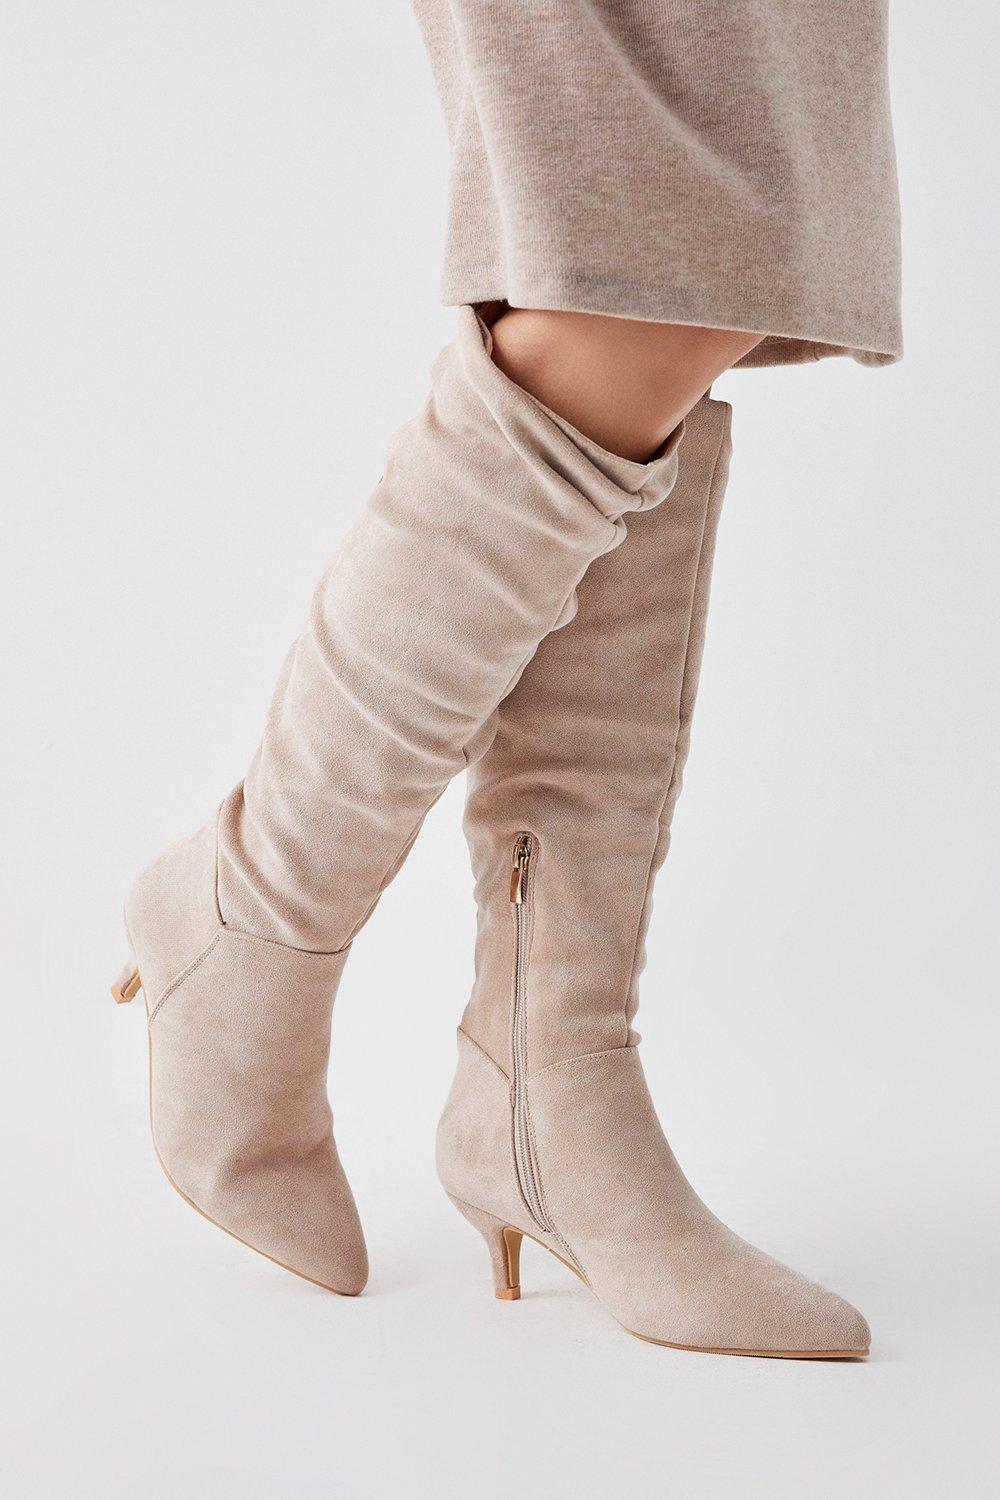 Women’s Khloe Knee High Low Heel Ruched Boots - beige - 6